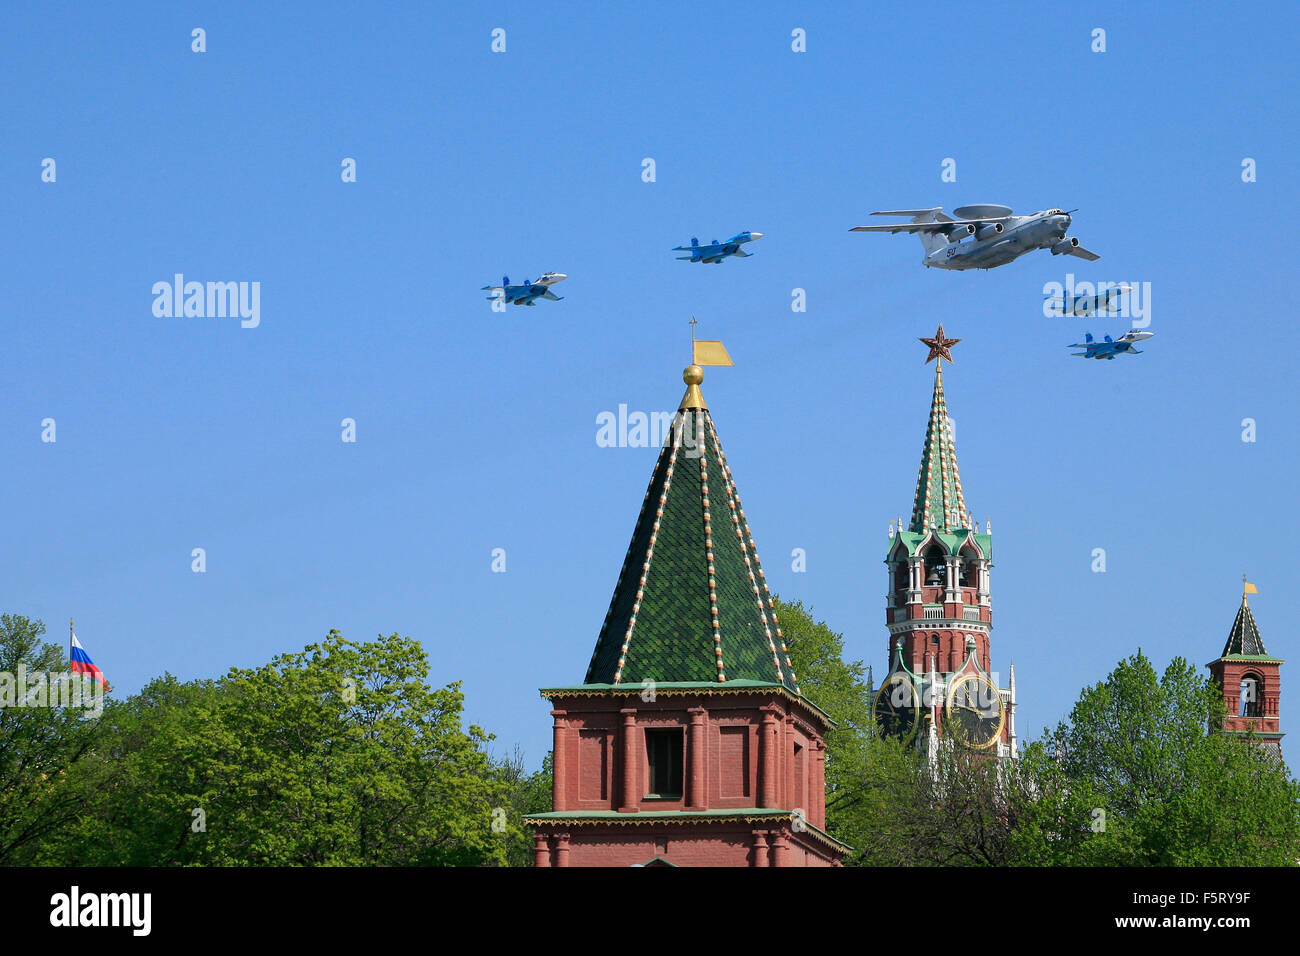 Ein Russe Luftgestützte Frühwarnung Berijew a-50 flankiert von 4 Suchoi Su-27 s während der Siegesparade in Moskau, Russland Stockfoto